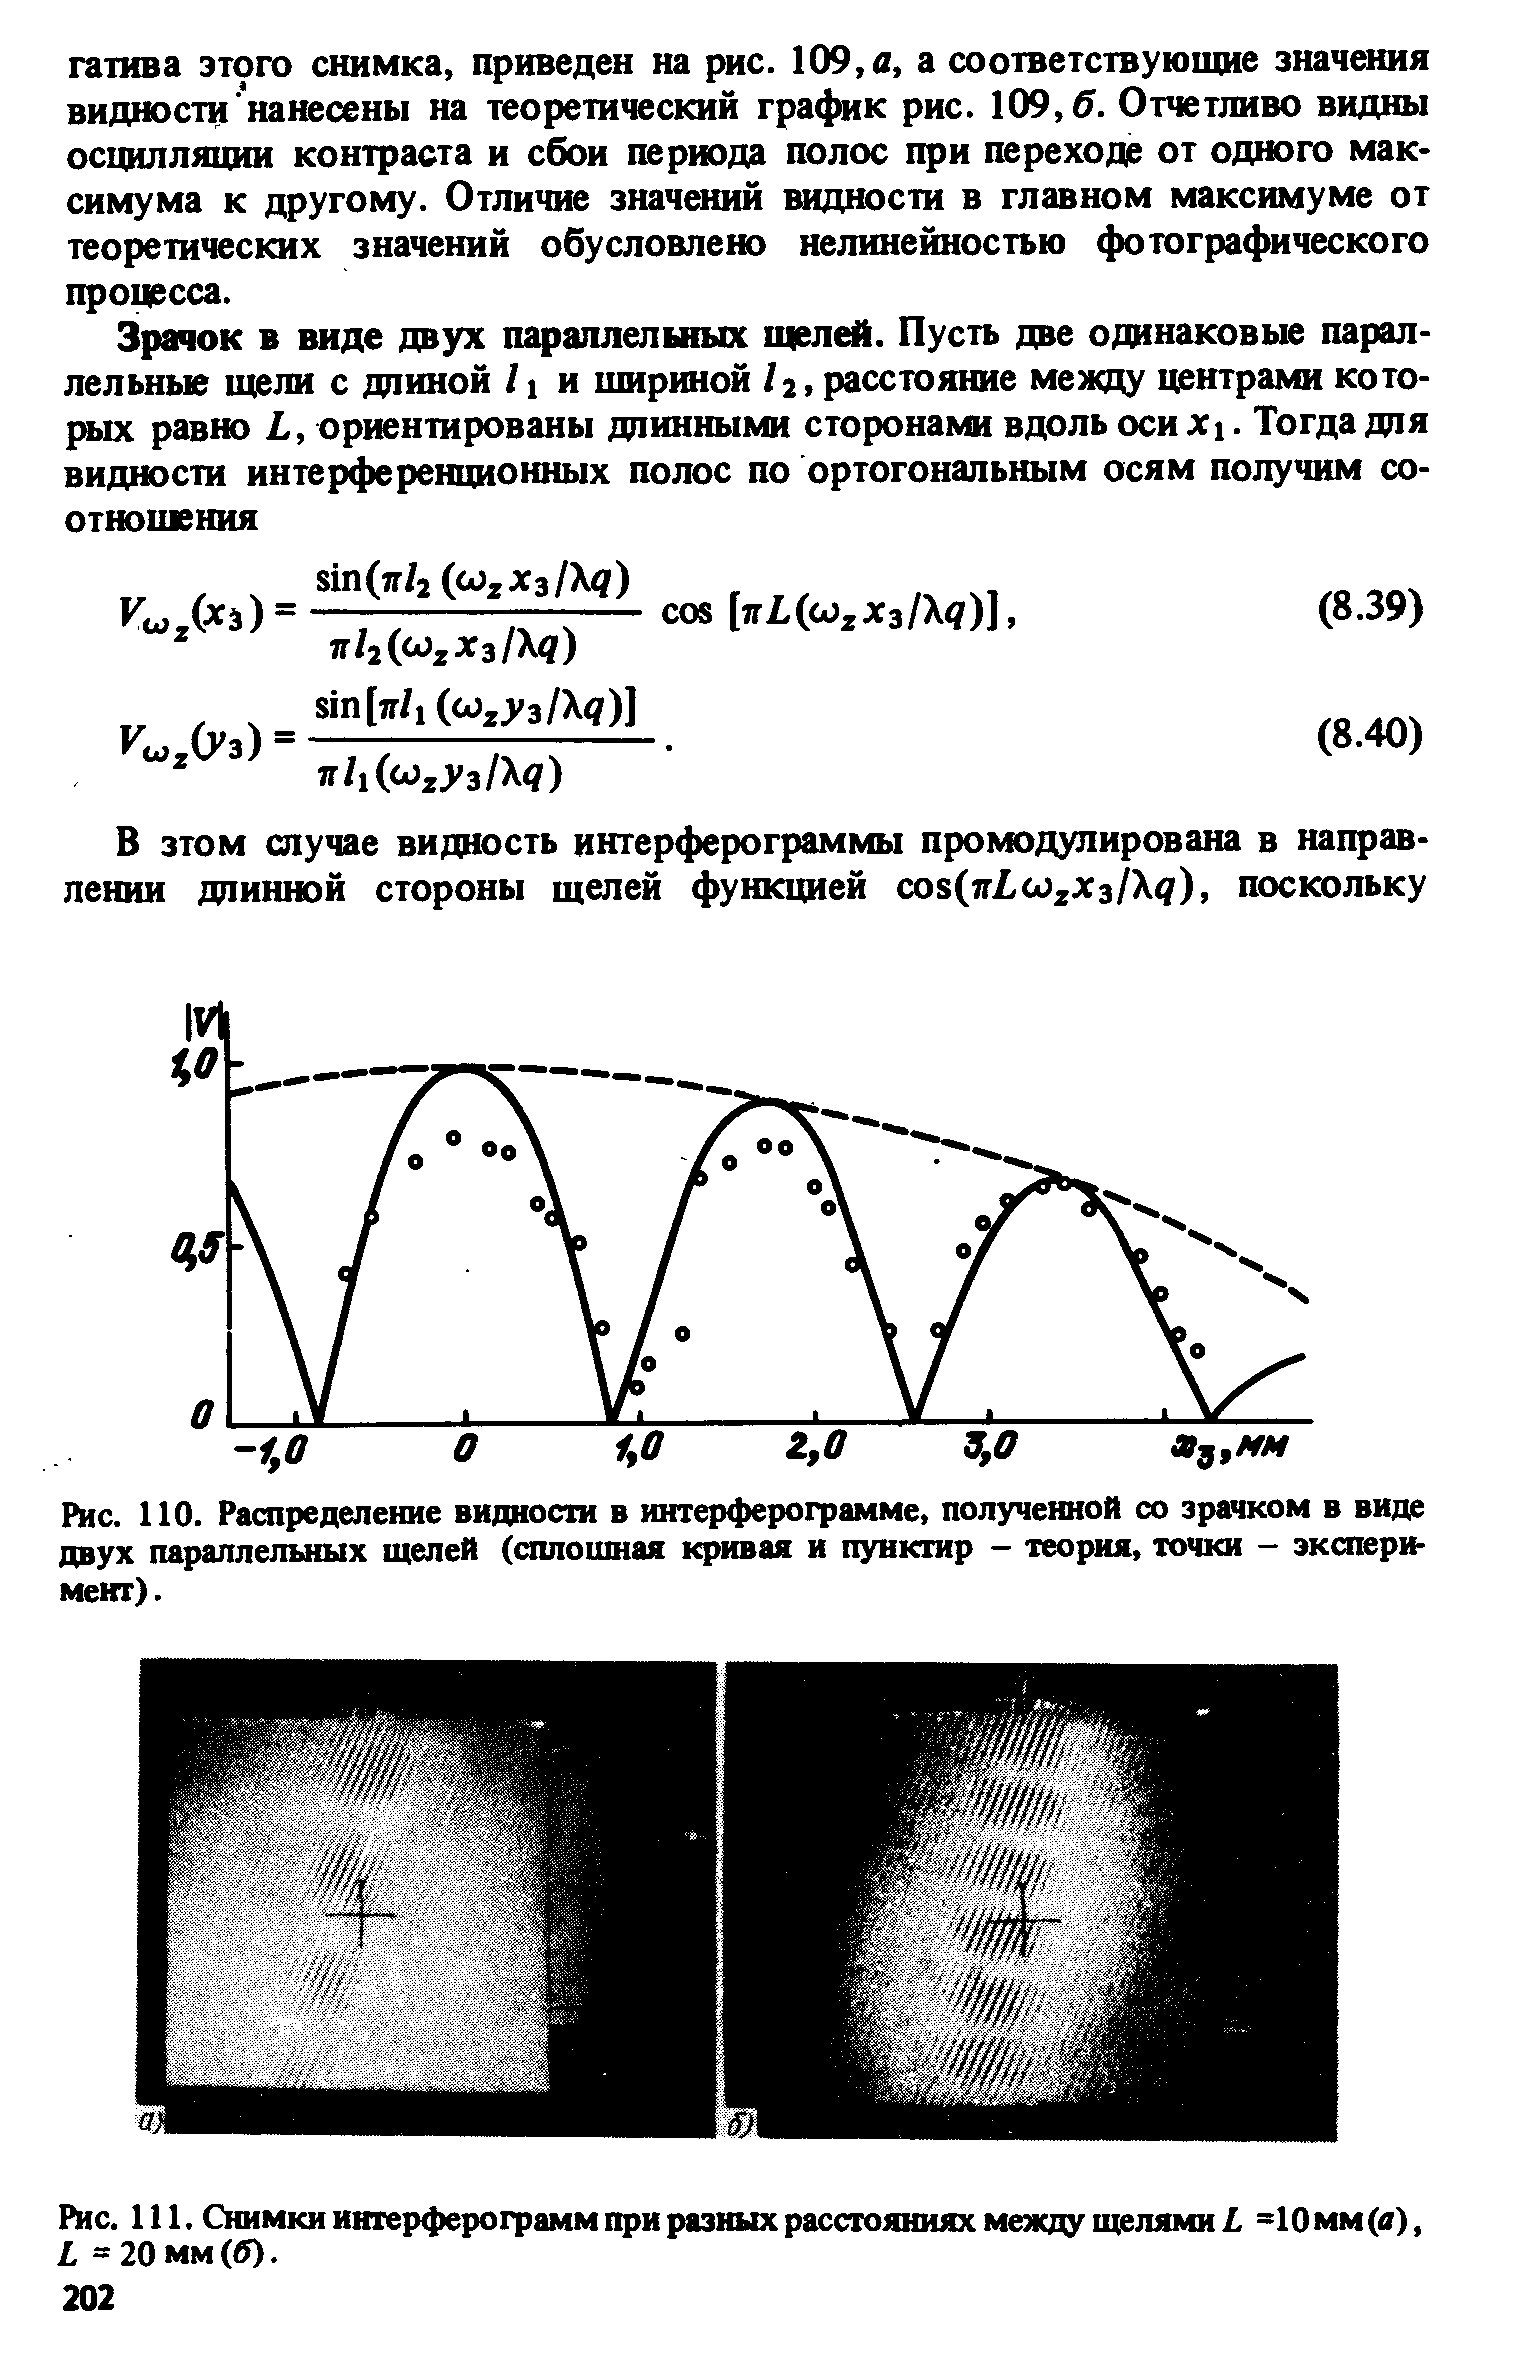 Рис. 110. Распределение видности в иитерферограмме. полученной со зрачком в виде двух параллелышх щелей (сплошная кривая и пунктир - теория, точки - экспери-мект).
